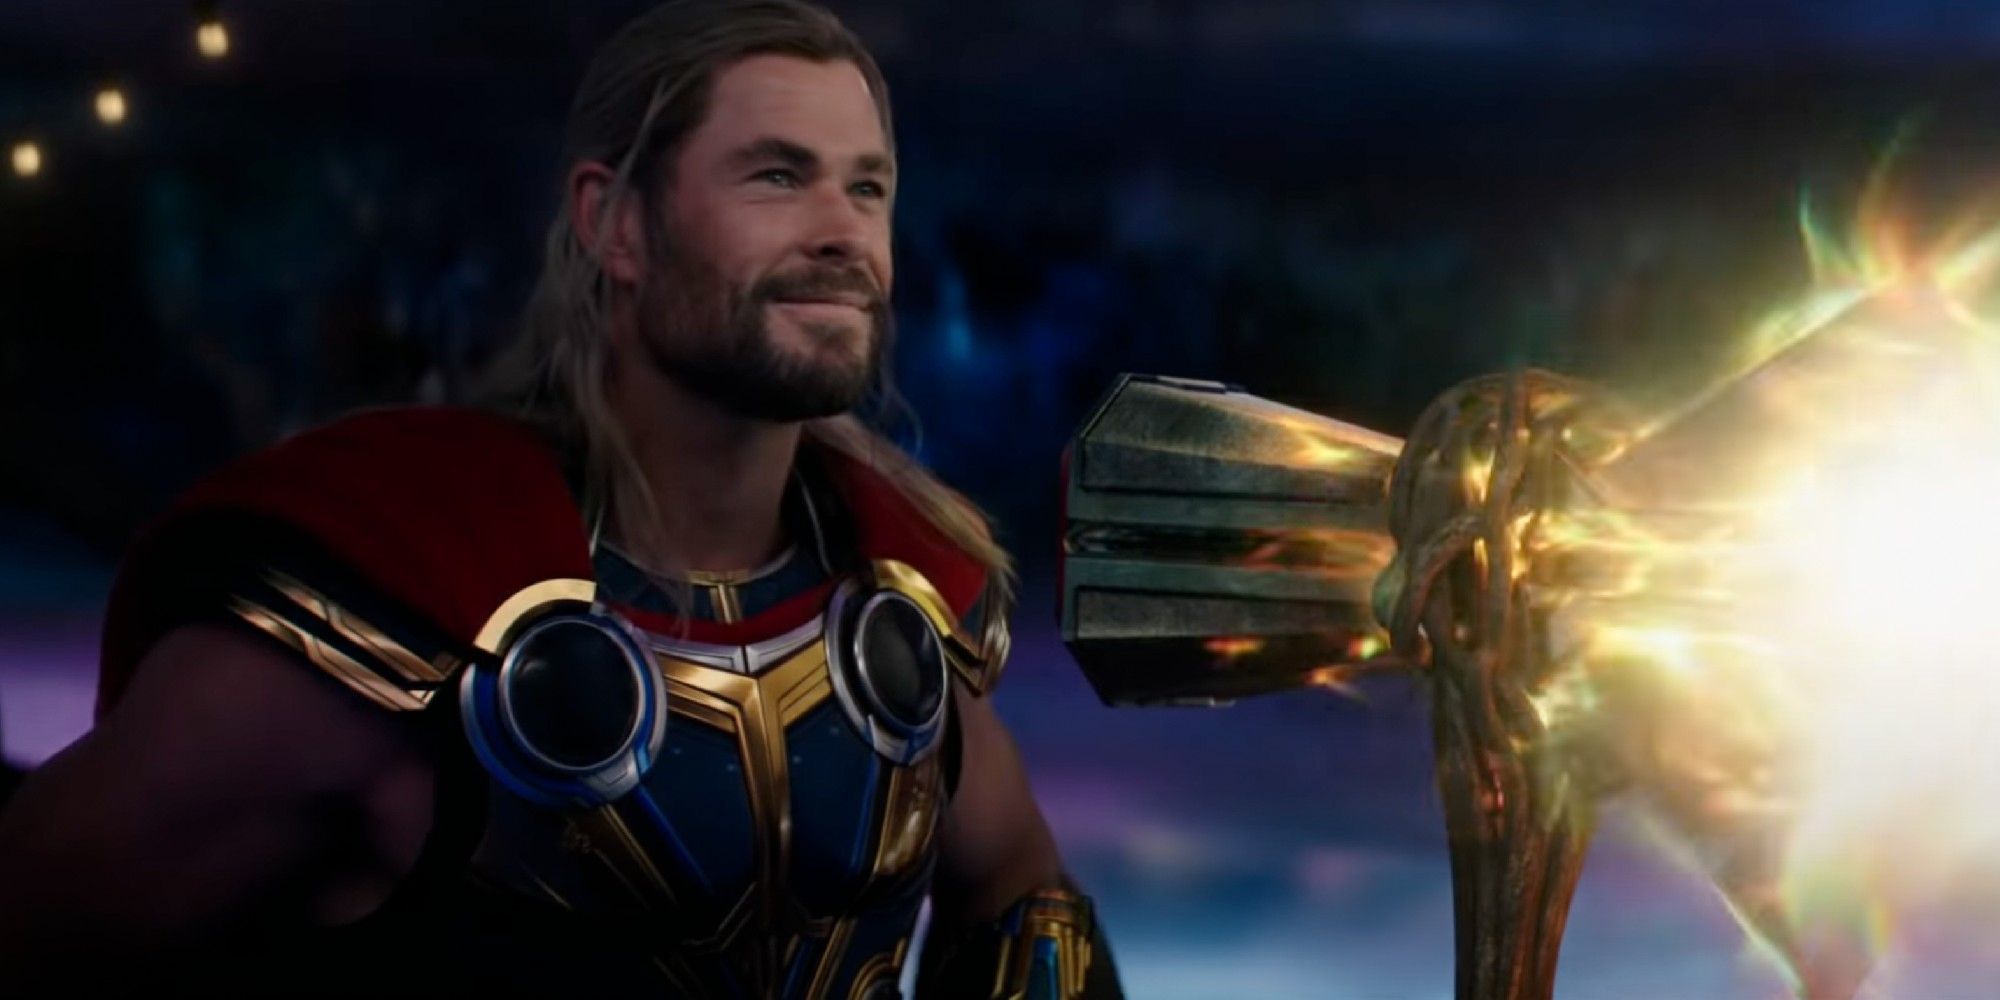 Exclusivo - Thor: Love & Thunder: Trailer mostra18 revelações e segredos da história 8